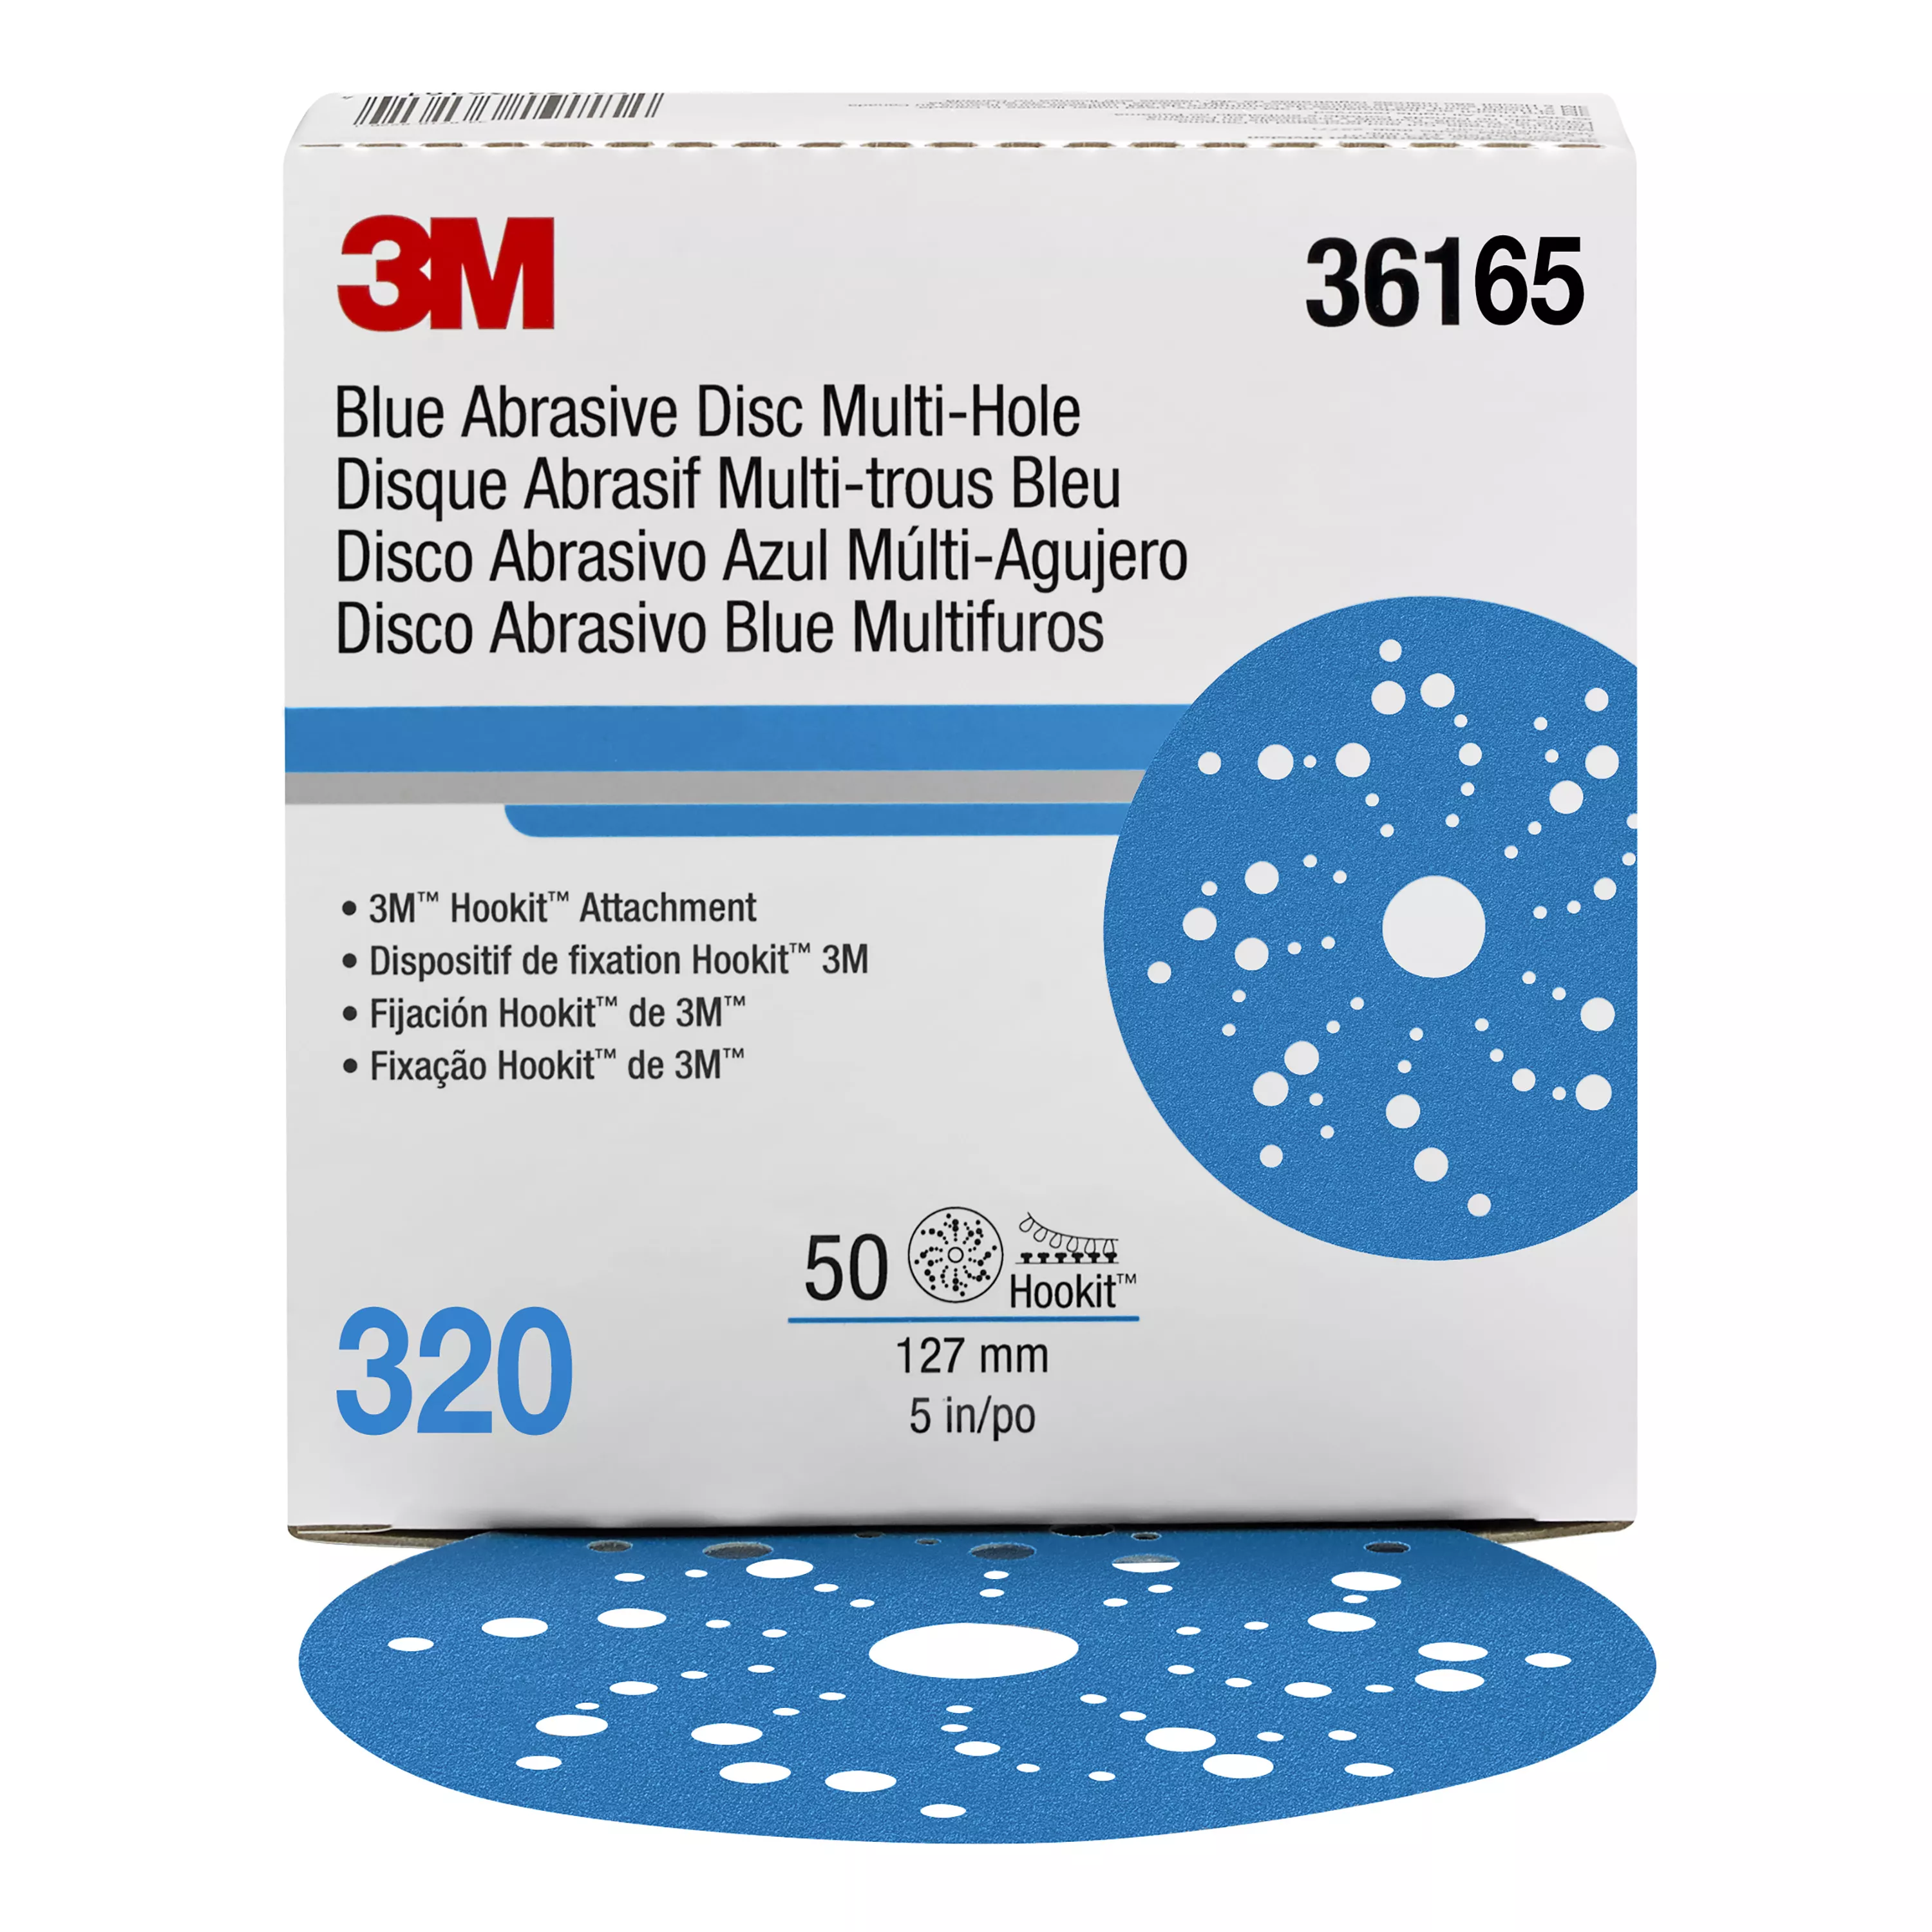 3M™ Hookit™ Blue Abrasive Disc 321U, 36165, 5 in, 320 grade, Multi-hole, 50 discs per carton, 4 cartons per case